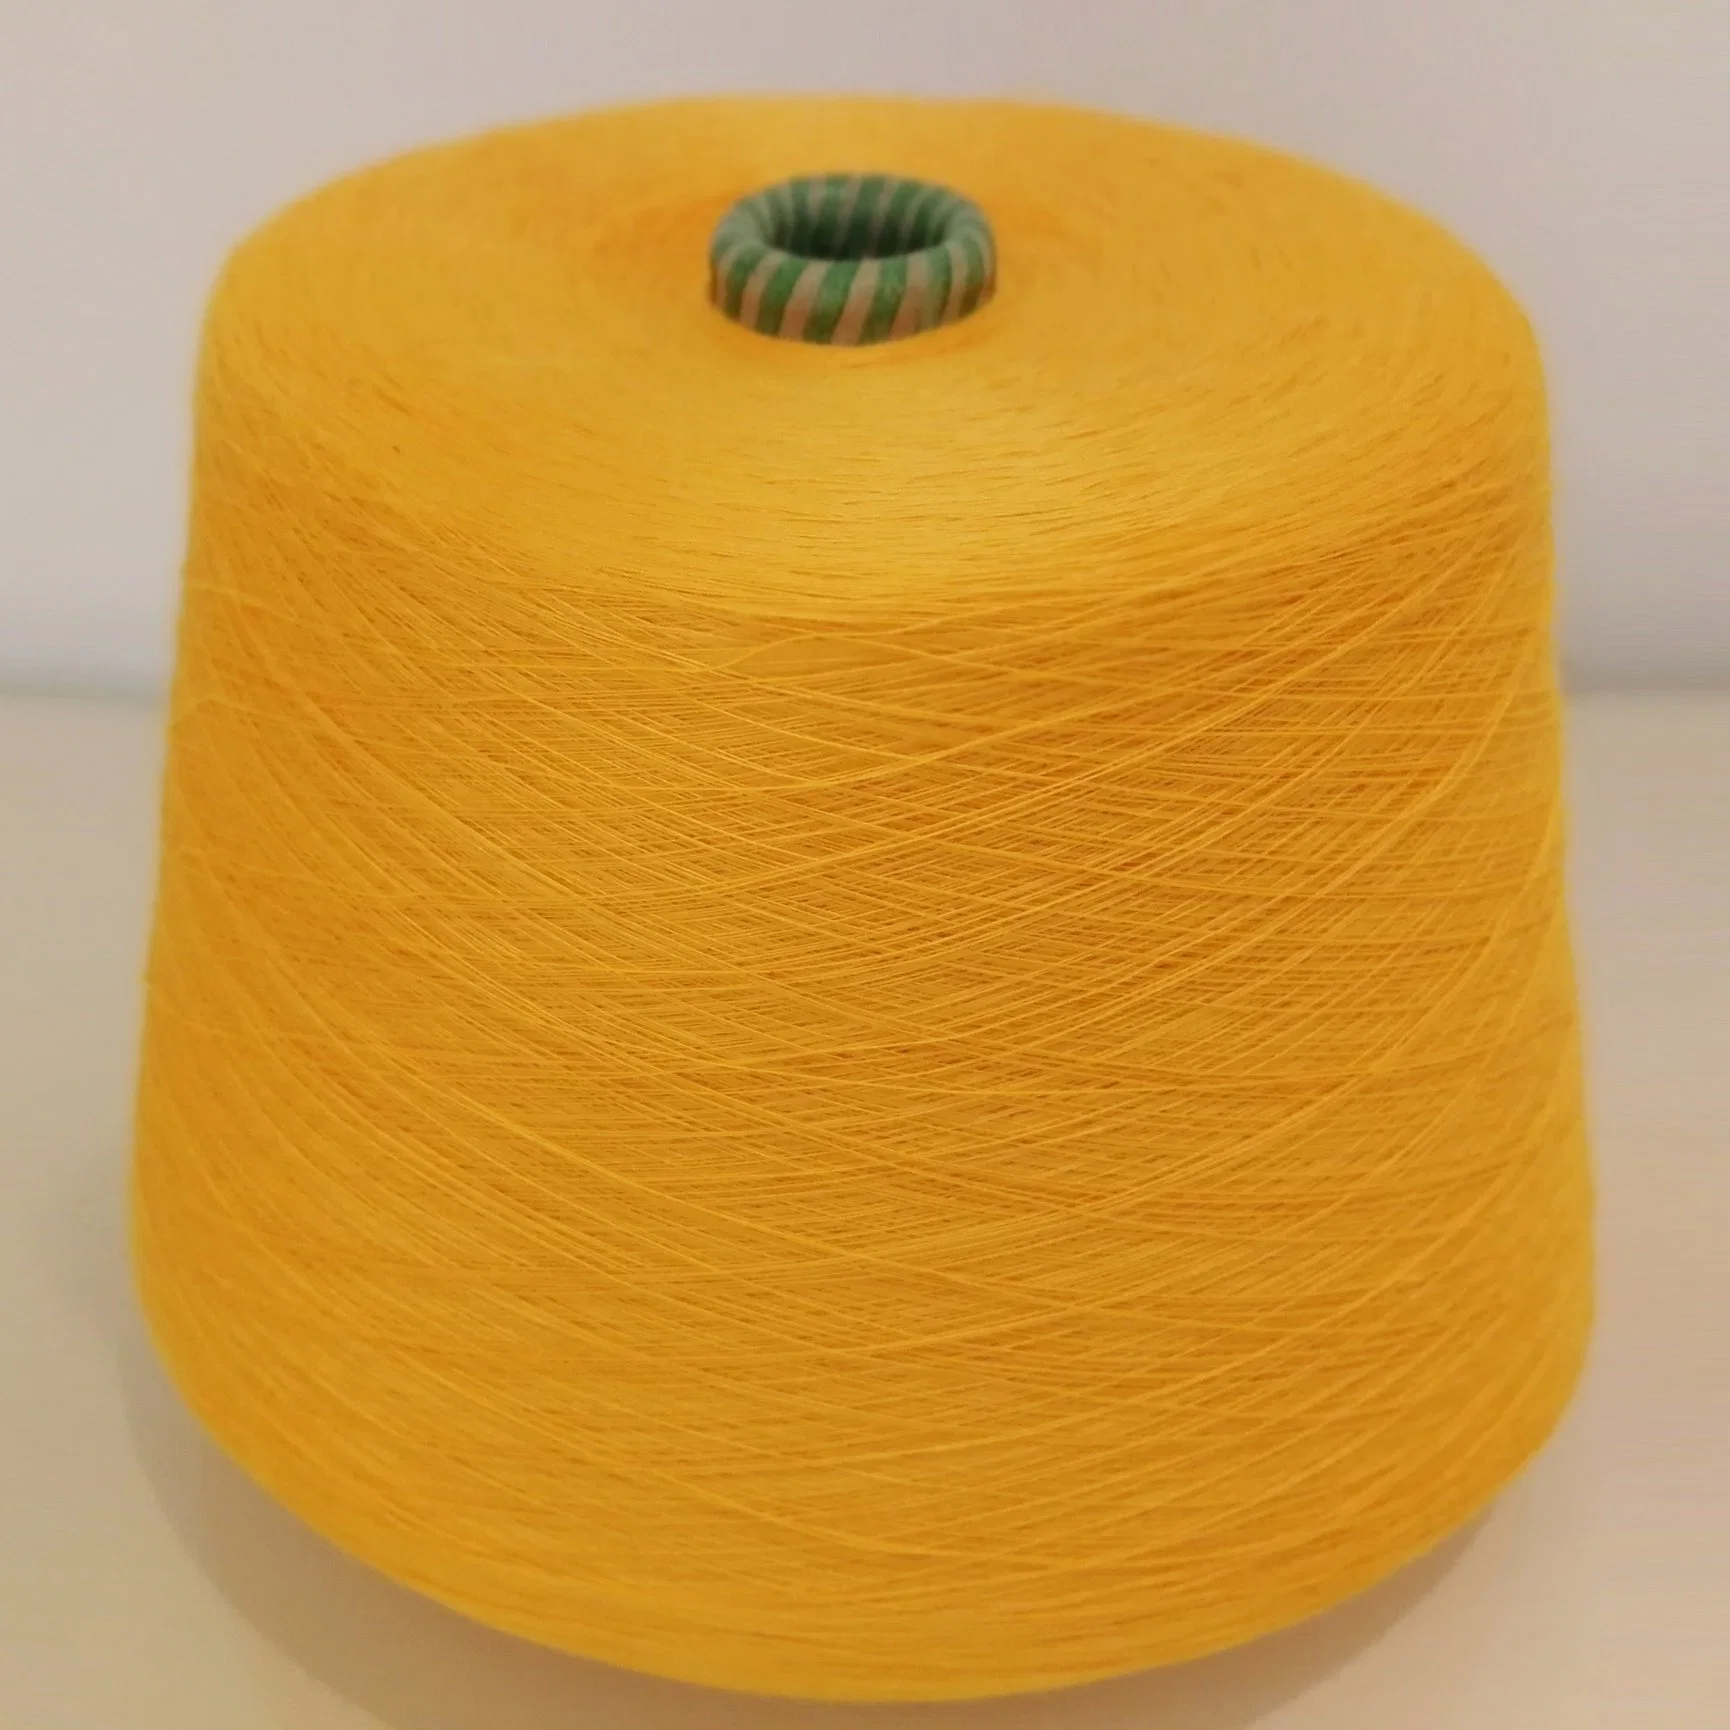 Spun Polyester Yarn 30s for Socks and Fabrics